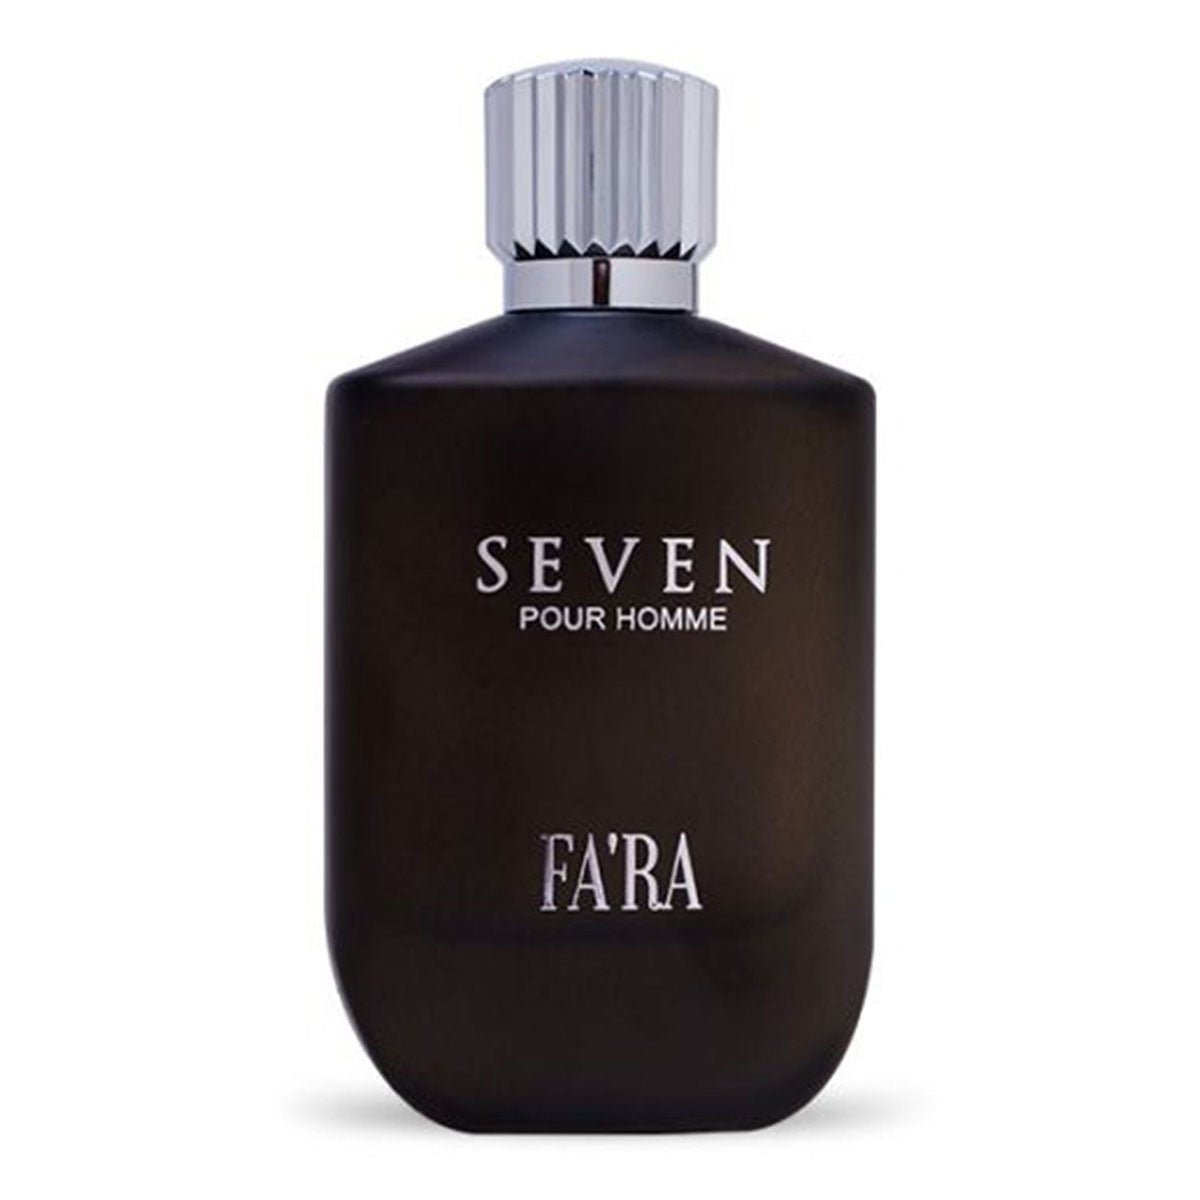 Fa'ra Seven Pour Homme Perfume Edp For Men 100Ml - AllurebeautypkFa'ra Seven Pour Homme Perfume Edp For Men 100Ml